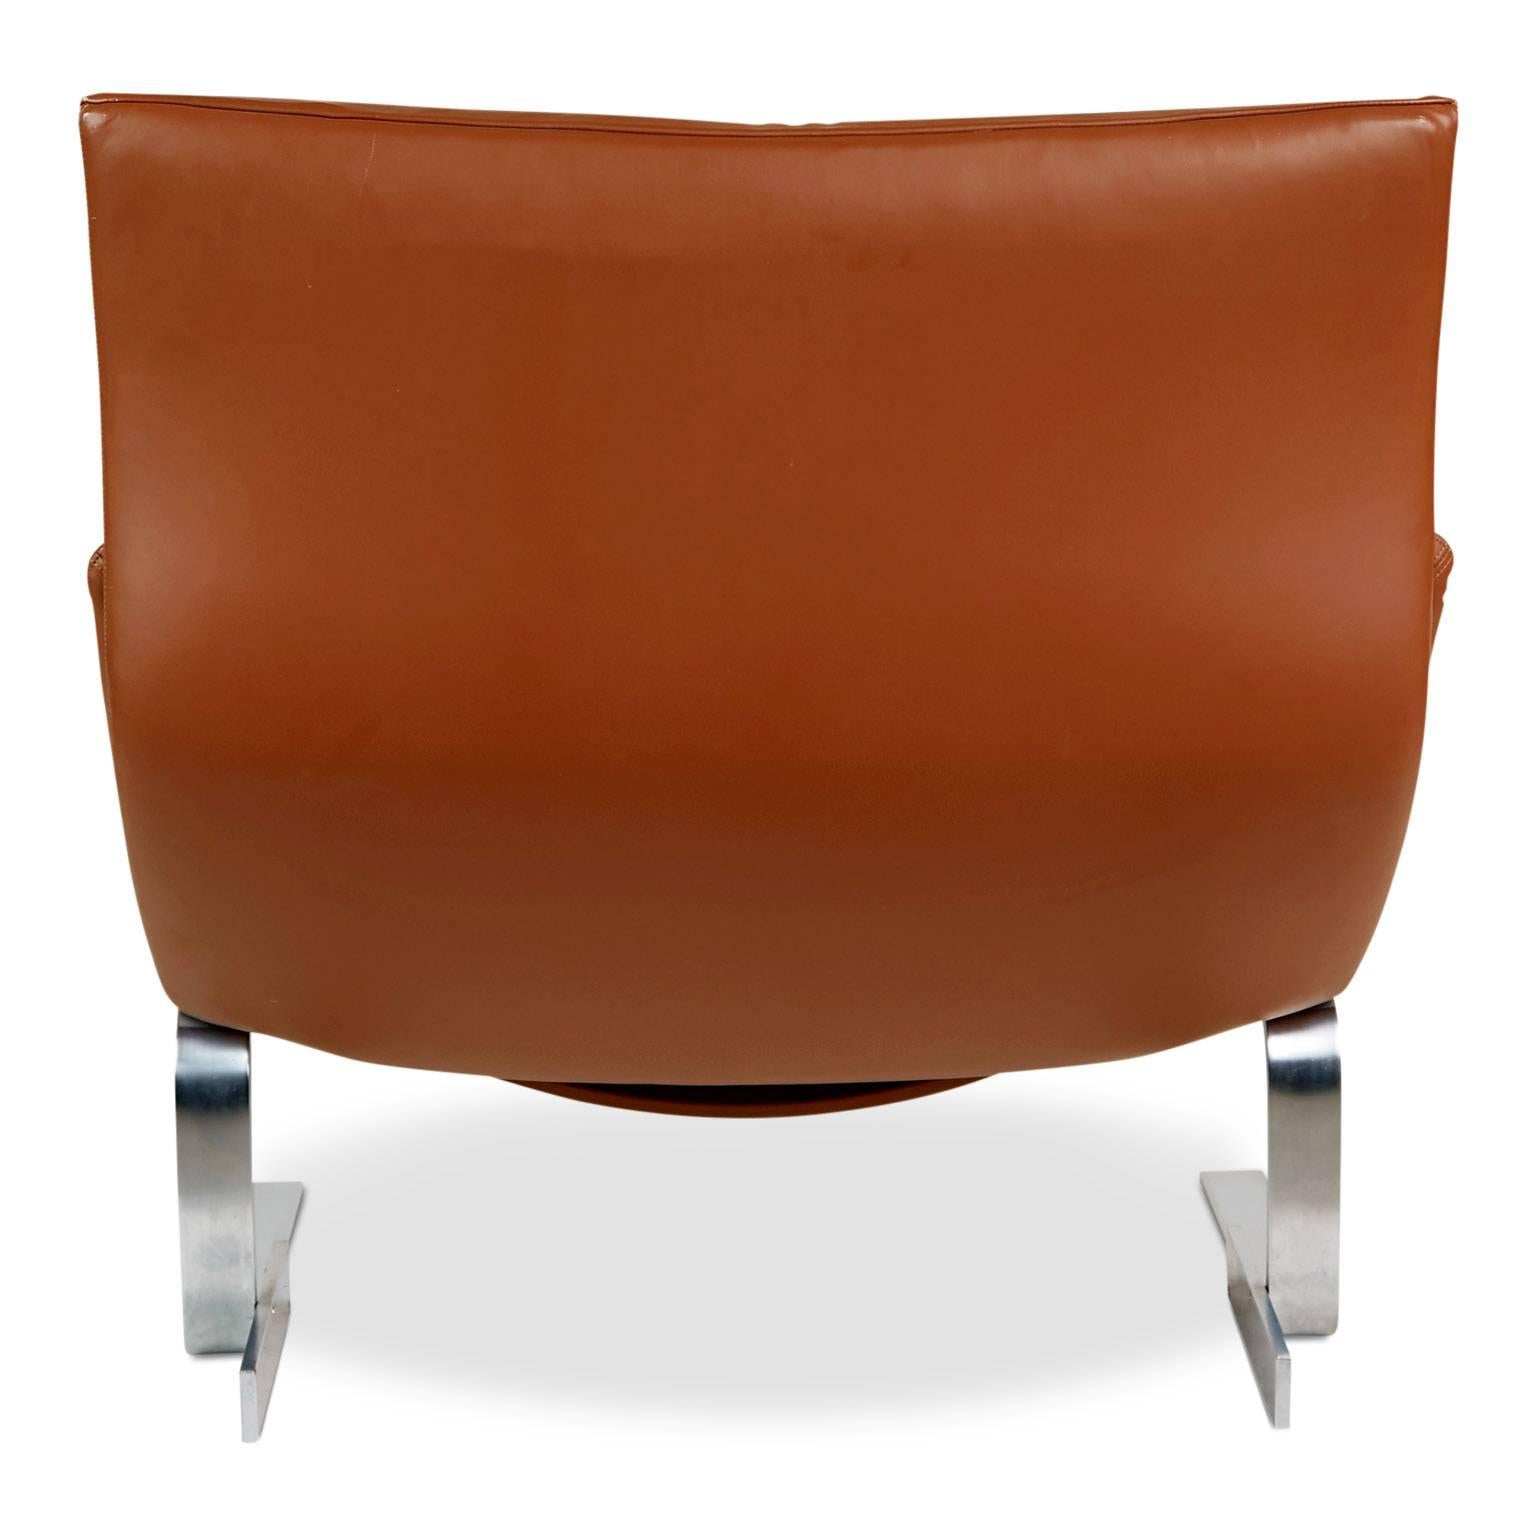 Late 20th Century Onda Leather Lounge Chair by Giovanni Offredi for Saporiti Italia, circa 1970